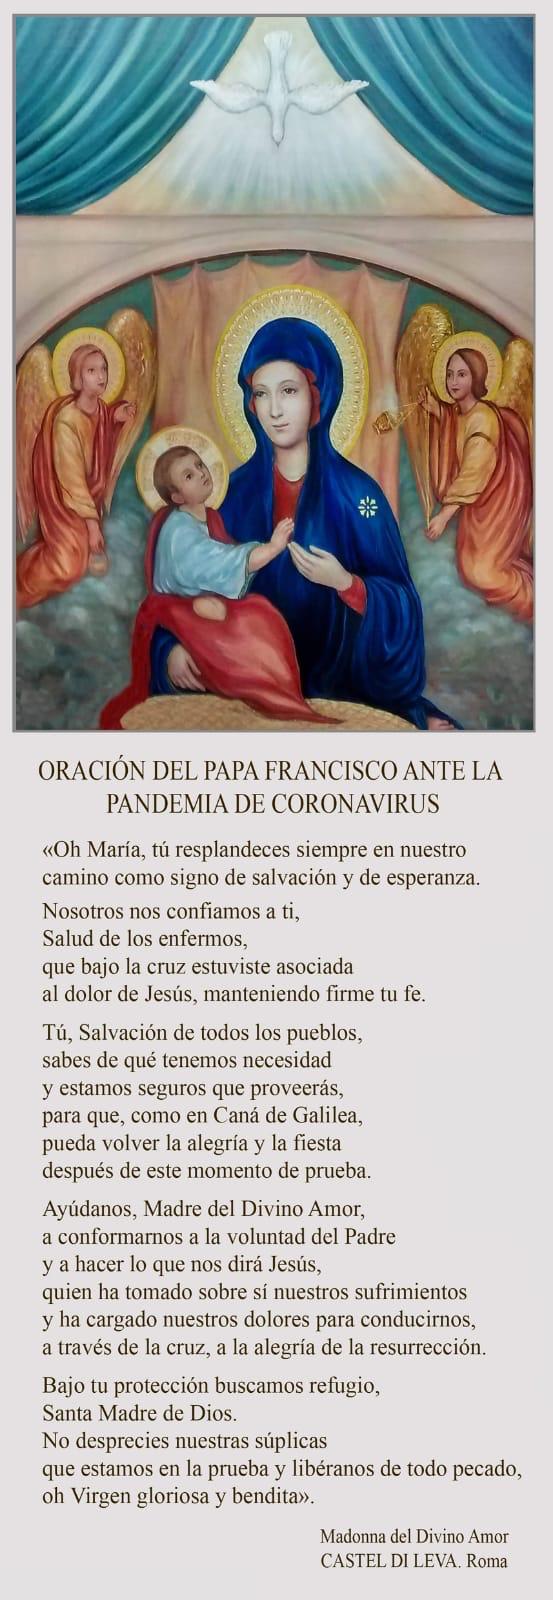 Oración del papa Francisco ante la pandemia del coronavirus 14 3 2020